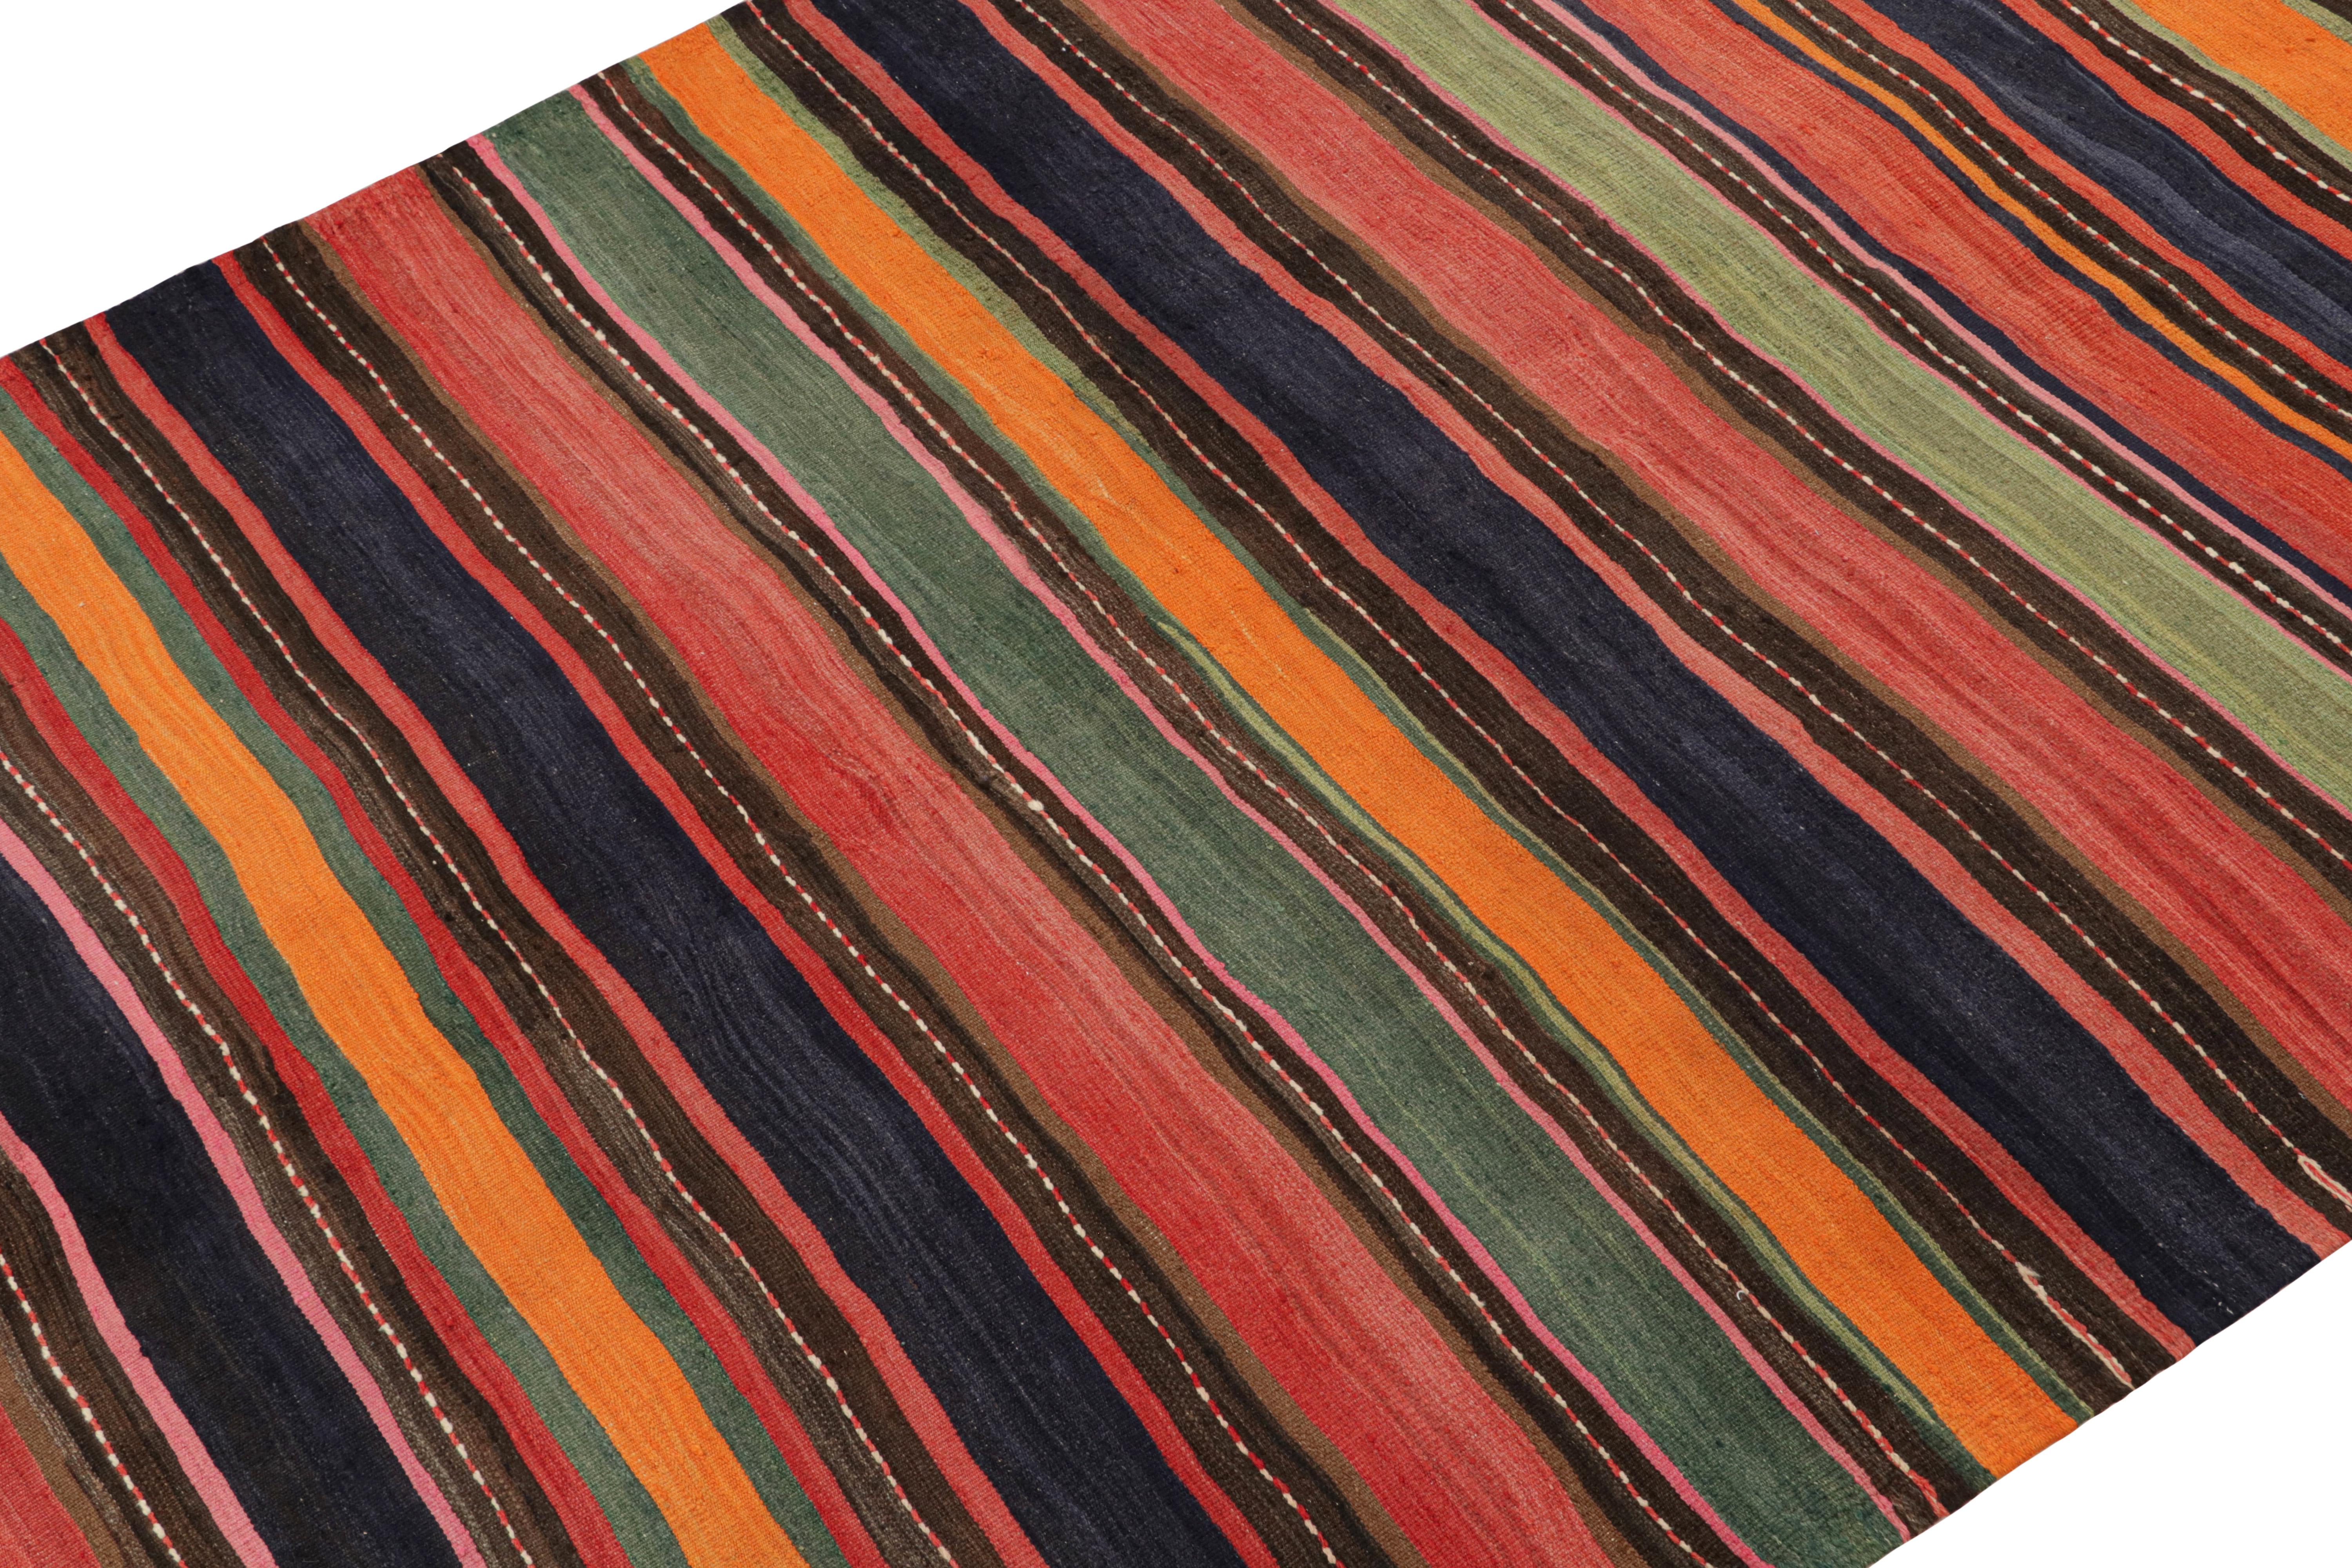 Dieser 6x11 große persische Bidjar-Kelim ist aus Wolle handgewebt und stammt aus der Zeit um 1950-1960.

Über das Design:

Dieses Flachgewebe zeichnet sich durch seine polychromen Streifen aus, wobei orange, rote, blaue, orangefarbene und grüne